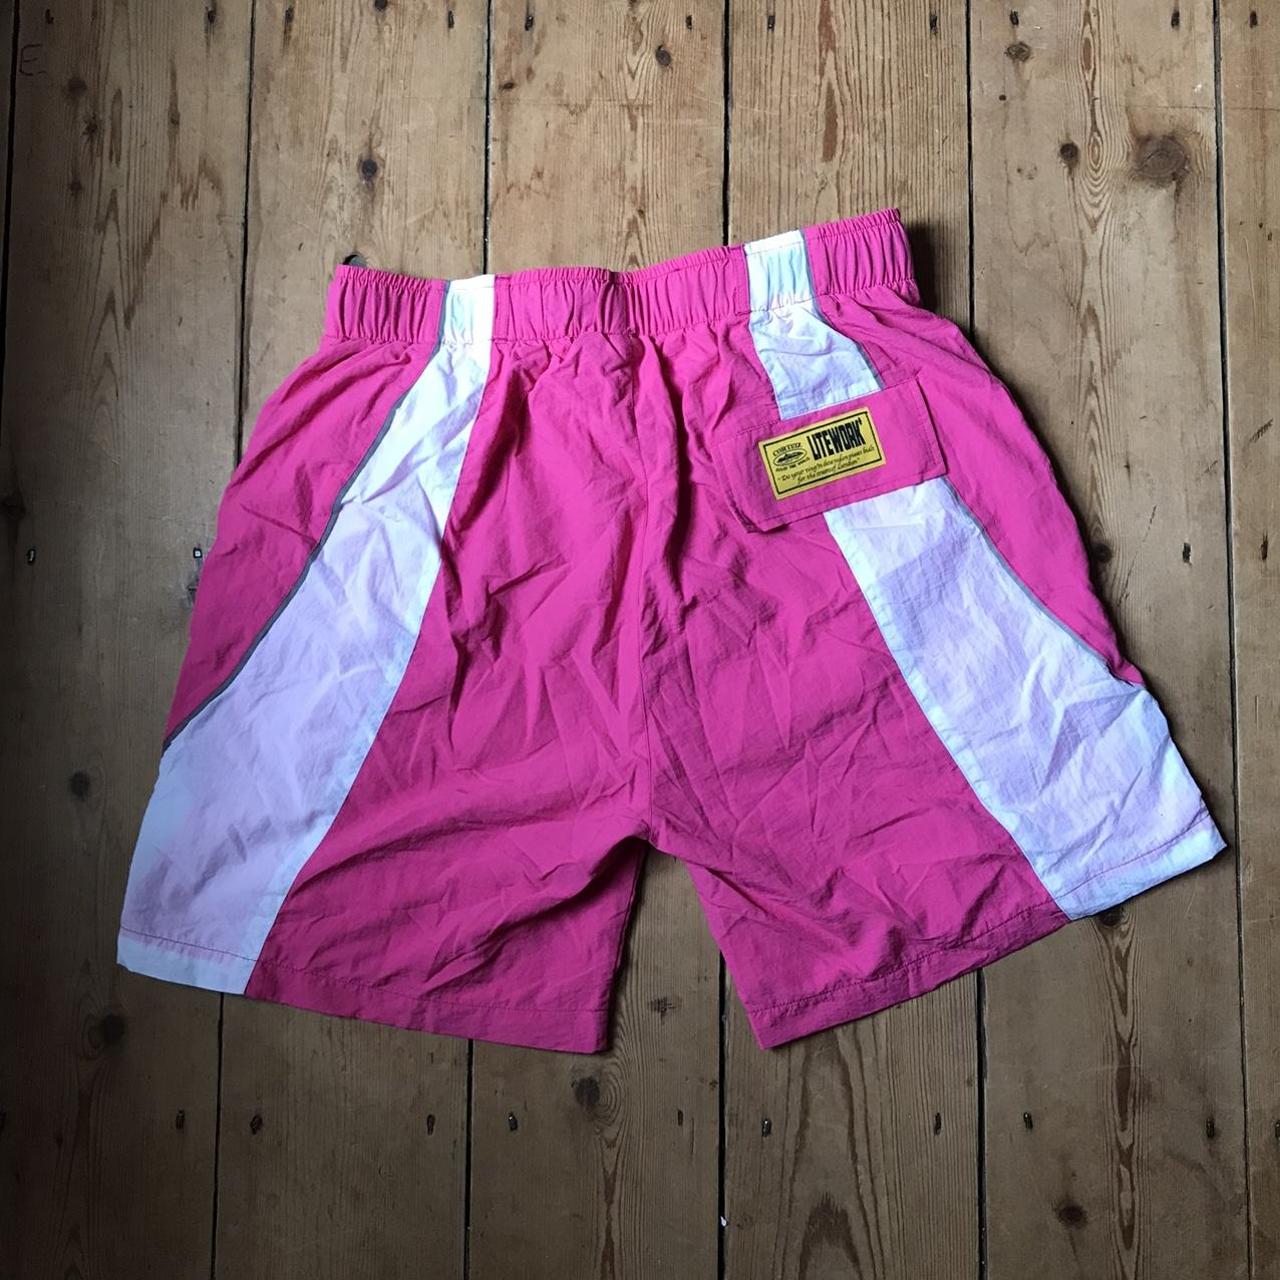 Corteiz spring shorts Pink Size medium Brand new... - Depop